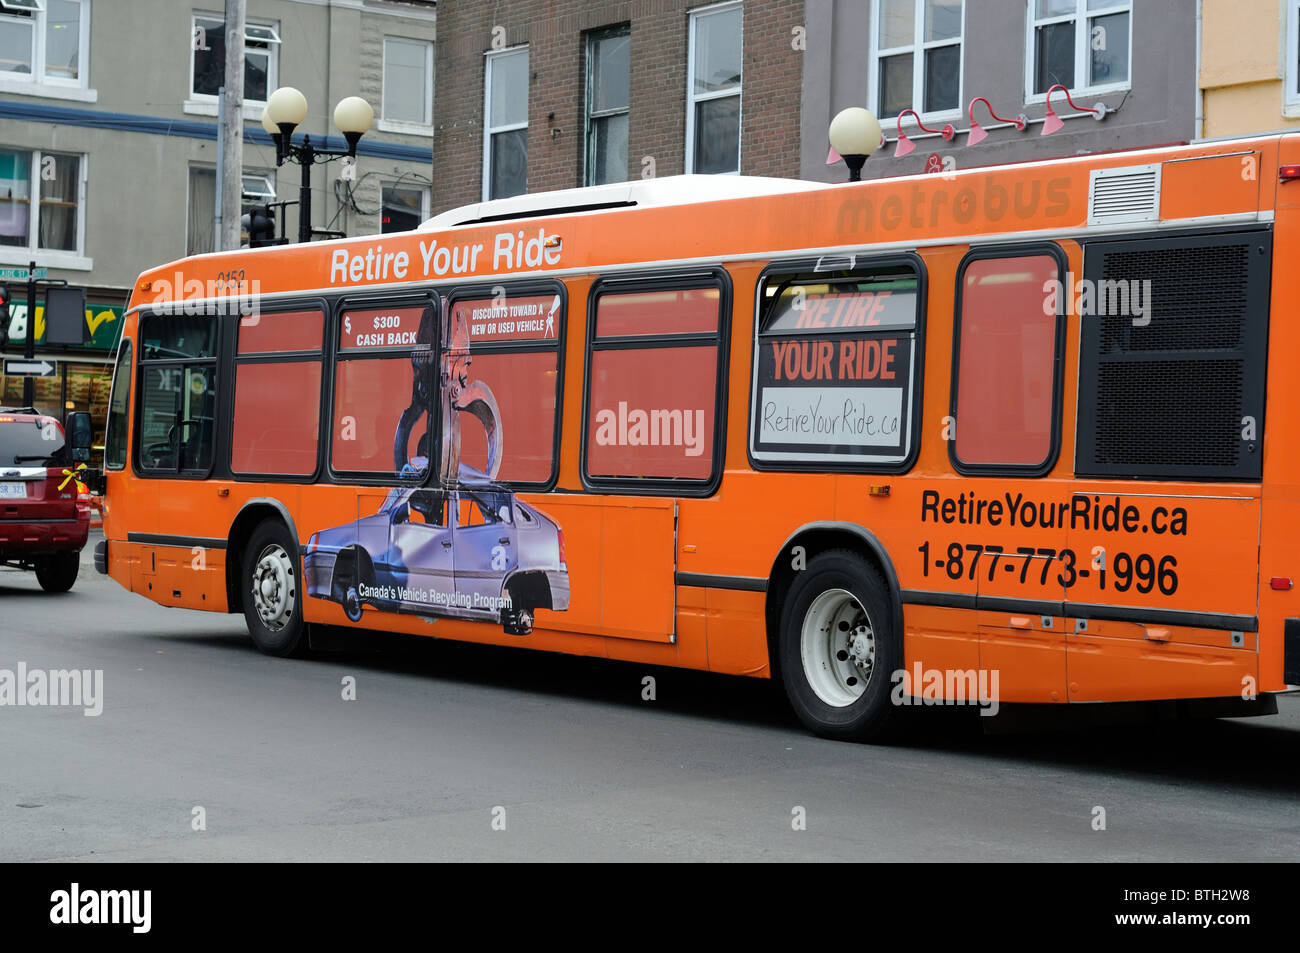 Kanadische Linienbus In St. Johns, Neufundland, Werbung für eine kanadische Regierungsprogramm, Ihr alte Auto zu recyceln Stockfoto